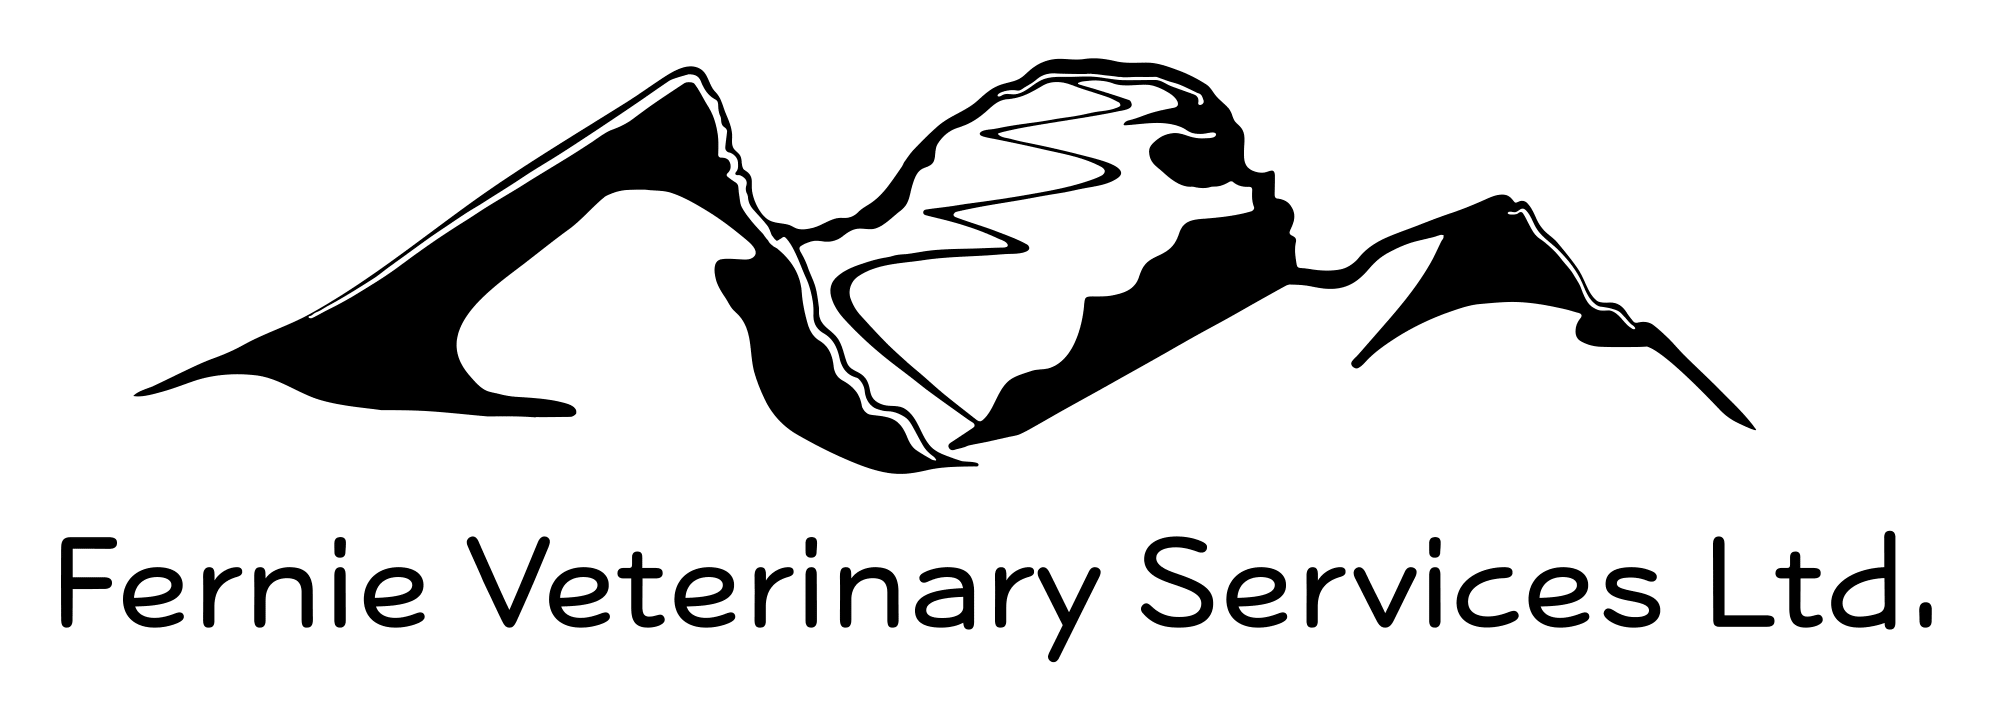 Fernie Veterinary Services Ltd. Logo